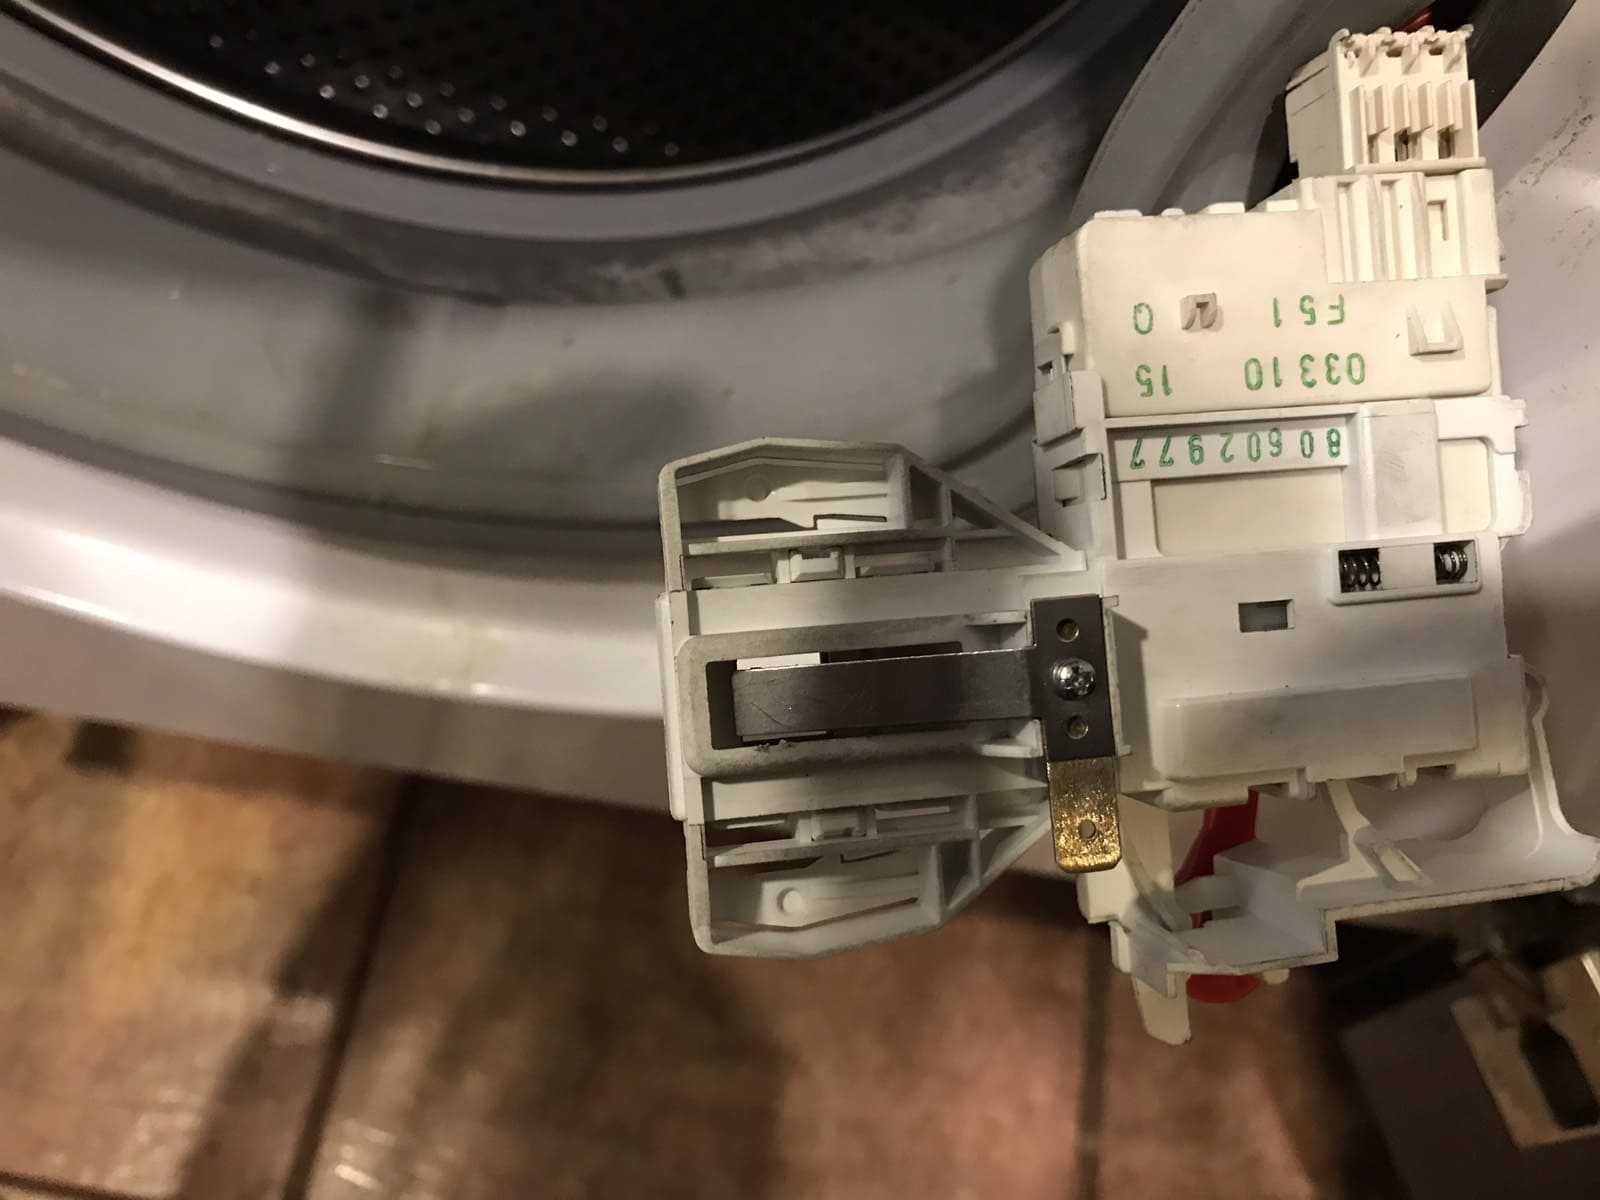 Почему не закрывается дверца стиральной машины?